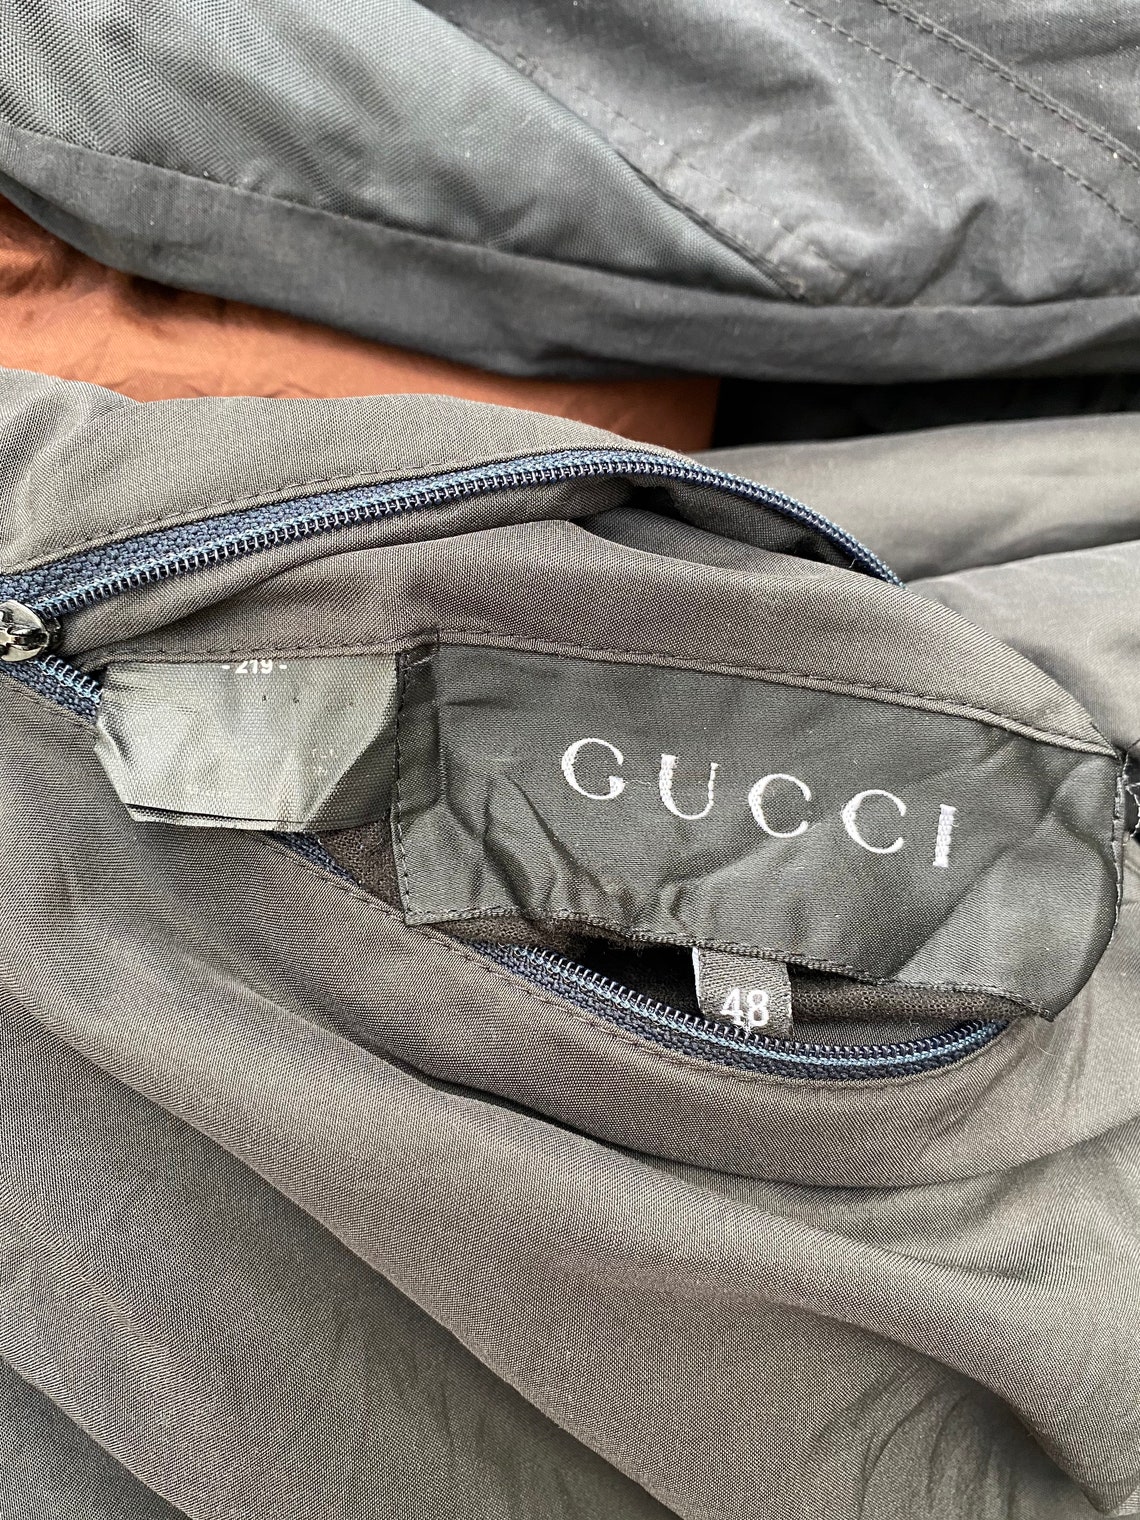 Very Rare Vintage Jacket Gucci Half Zip - Etsy